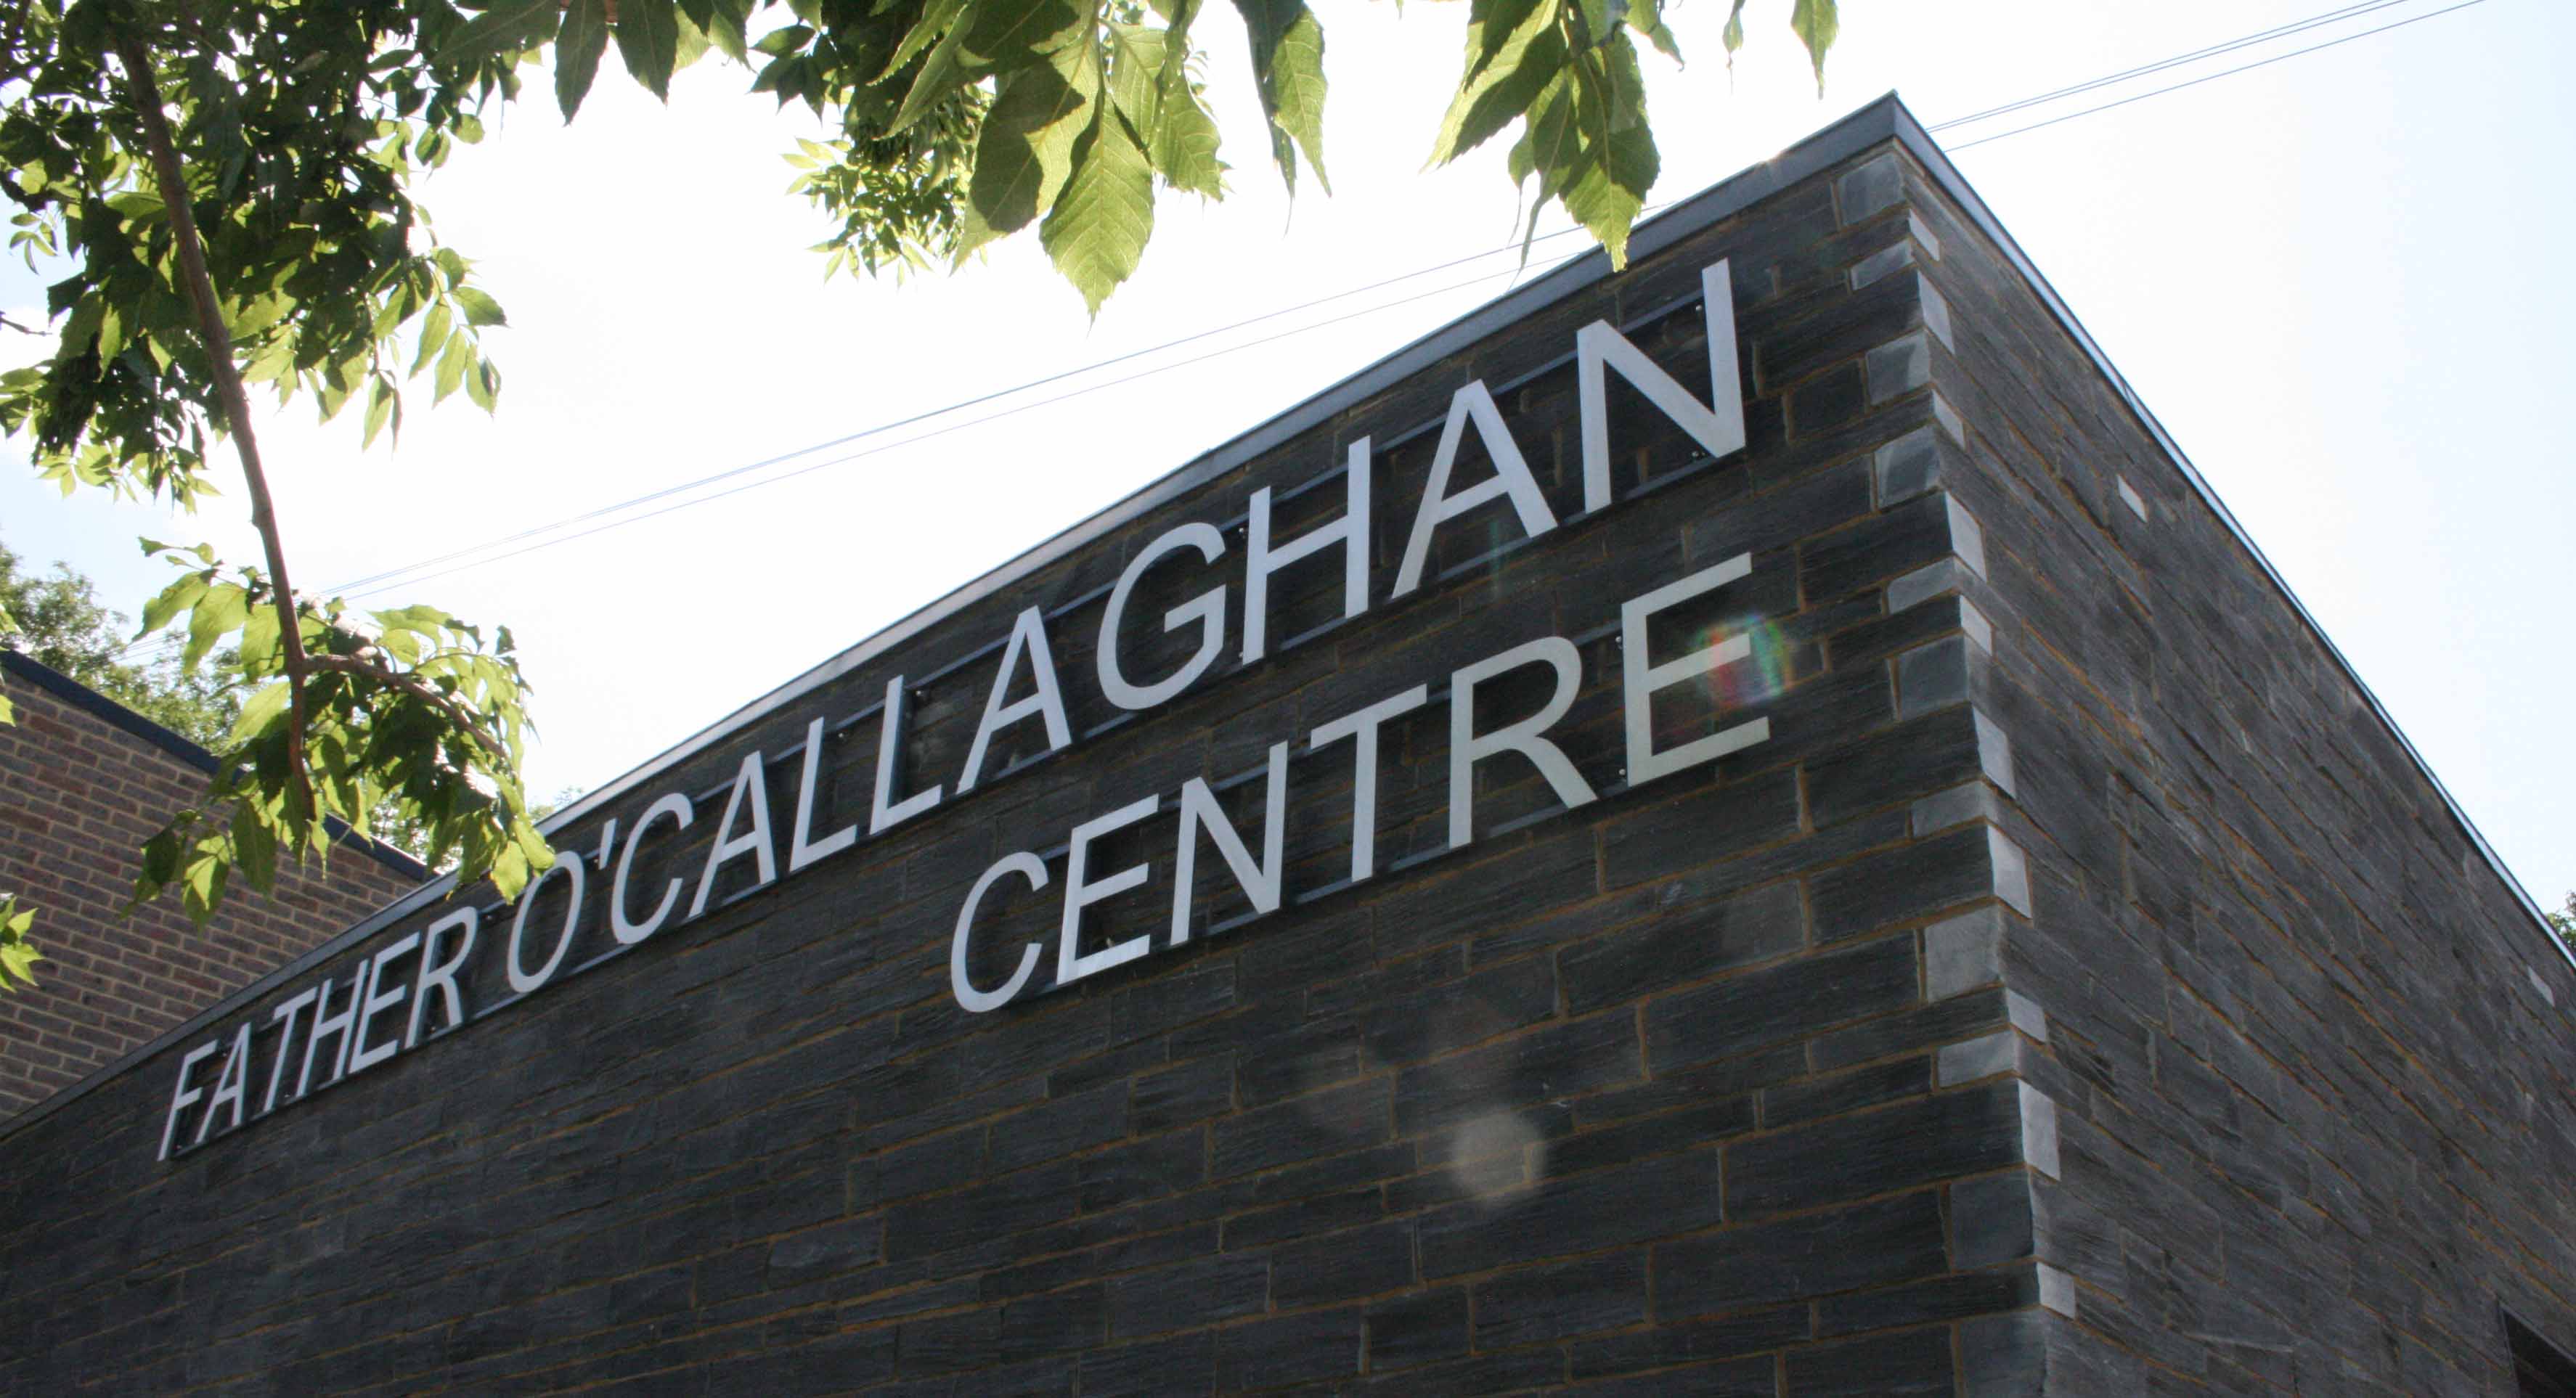 Fr. O'Callaghan Centre